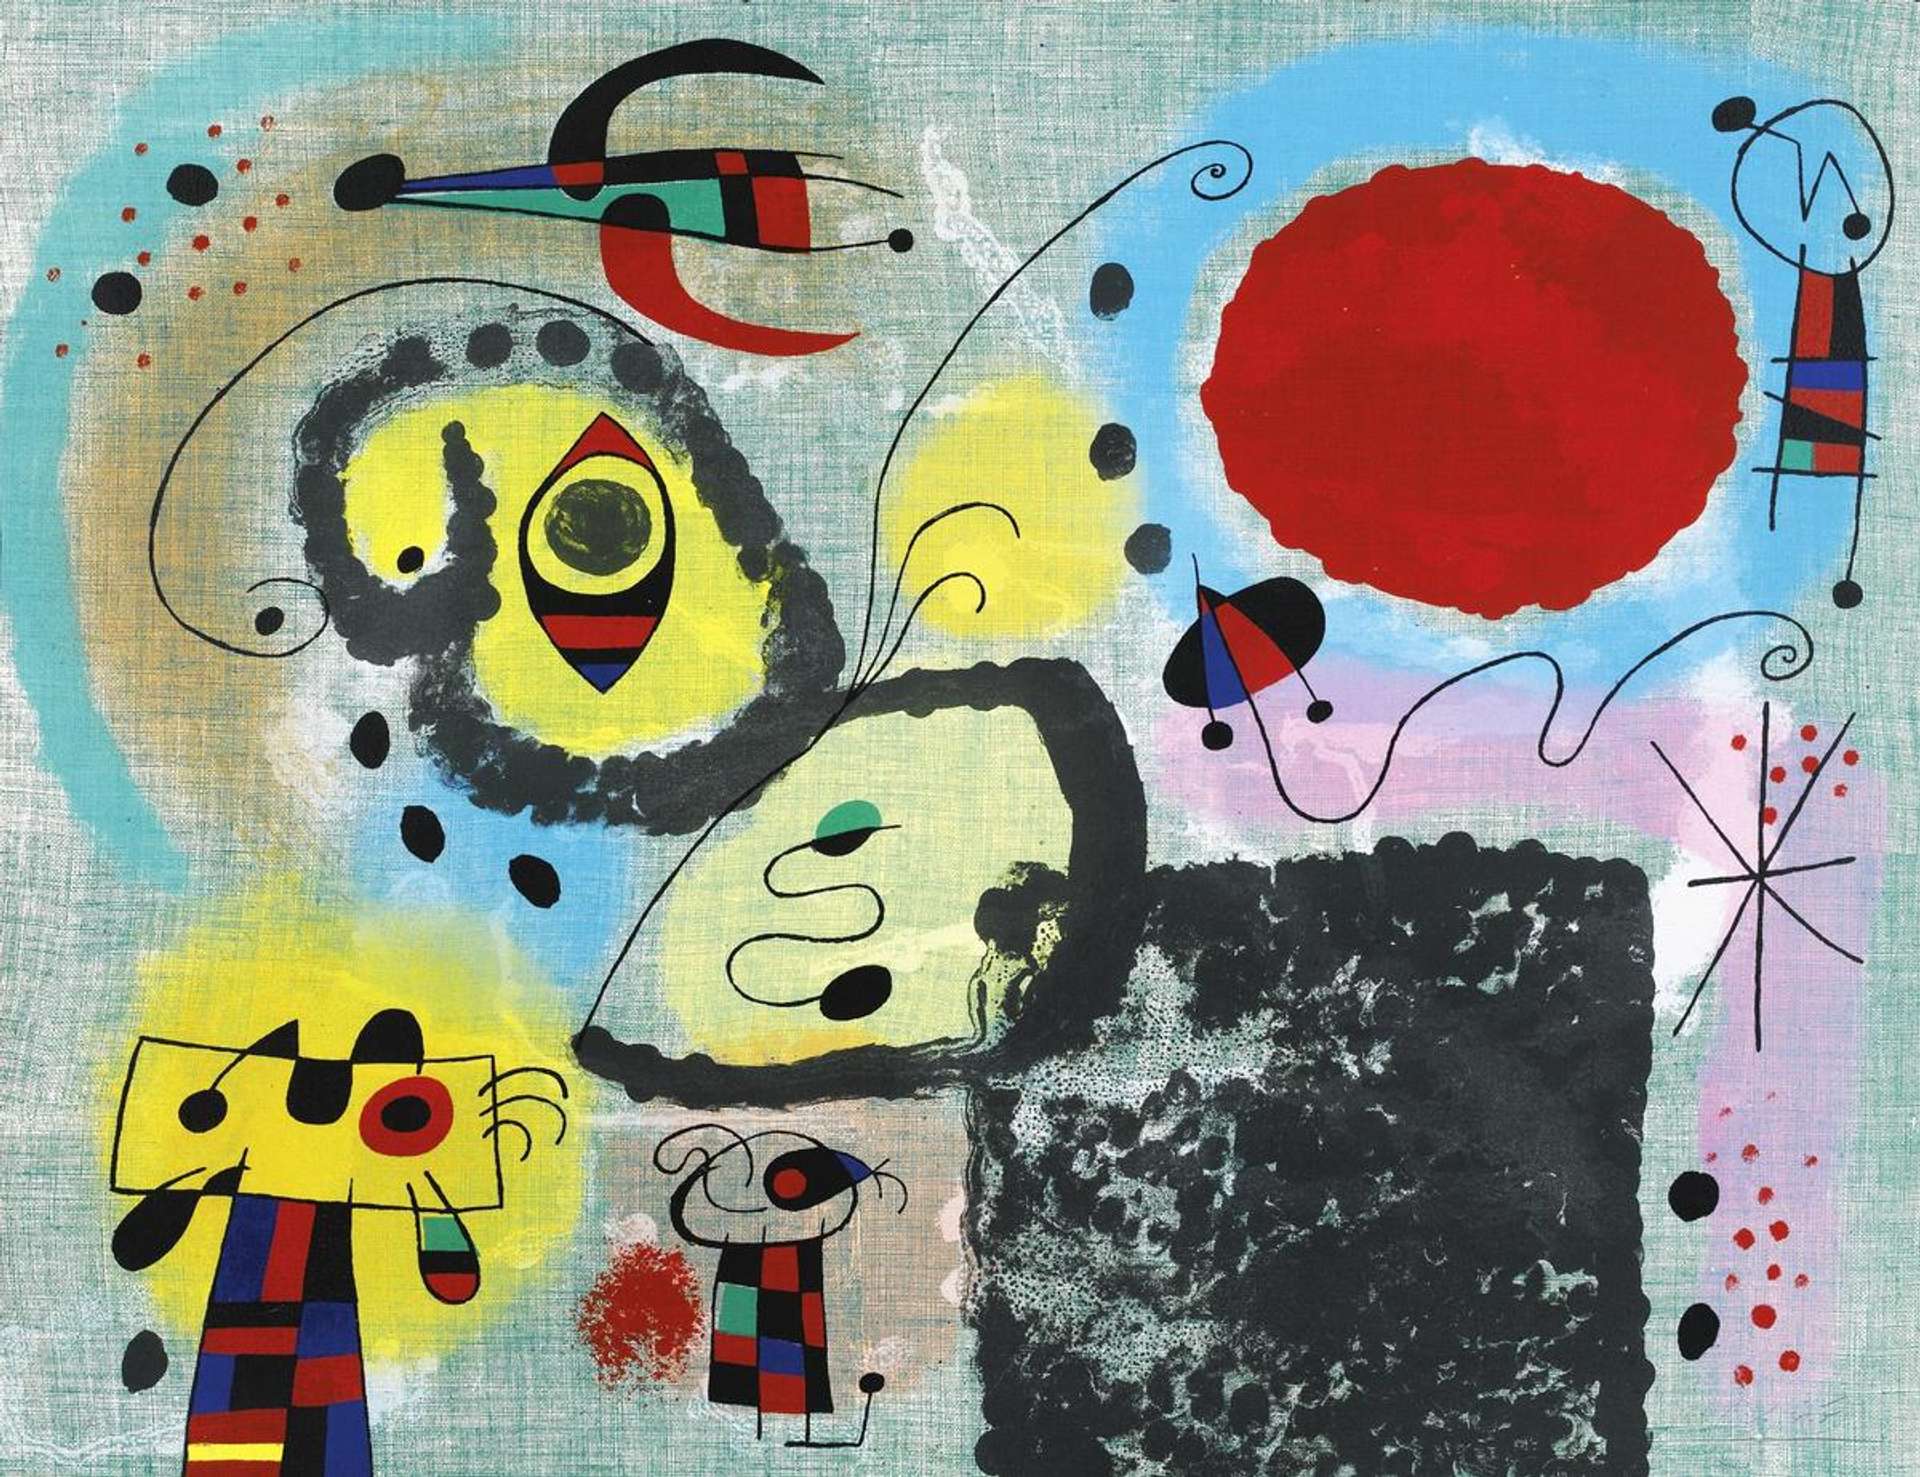 Centenaire - Signed Print by Joan Miró 1953 - MyArtBroker